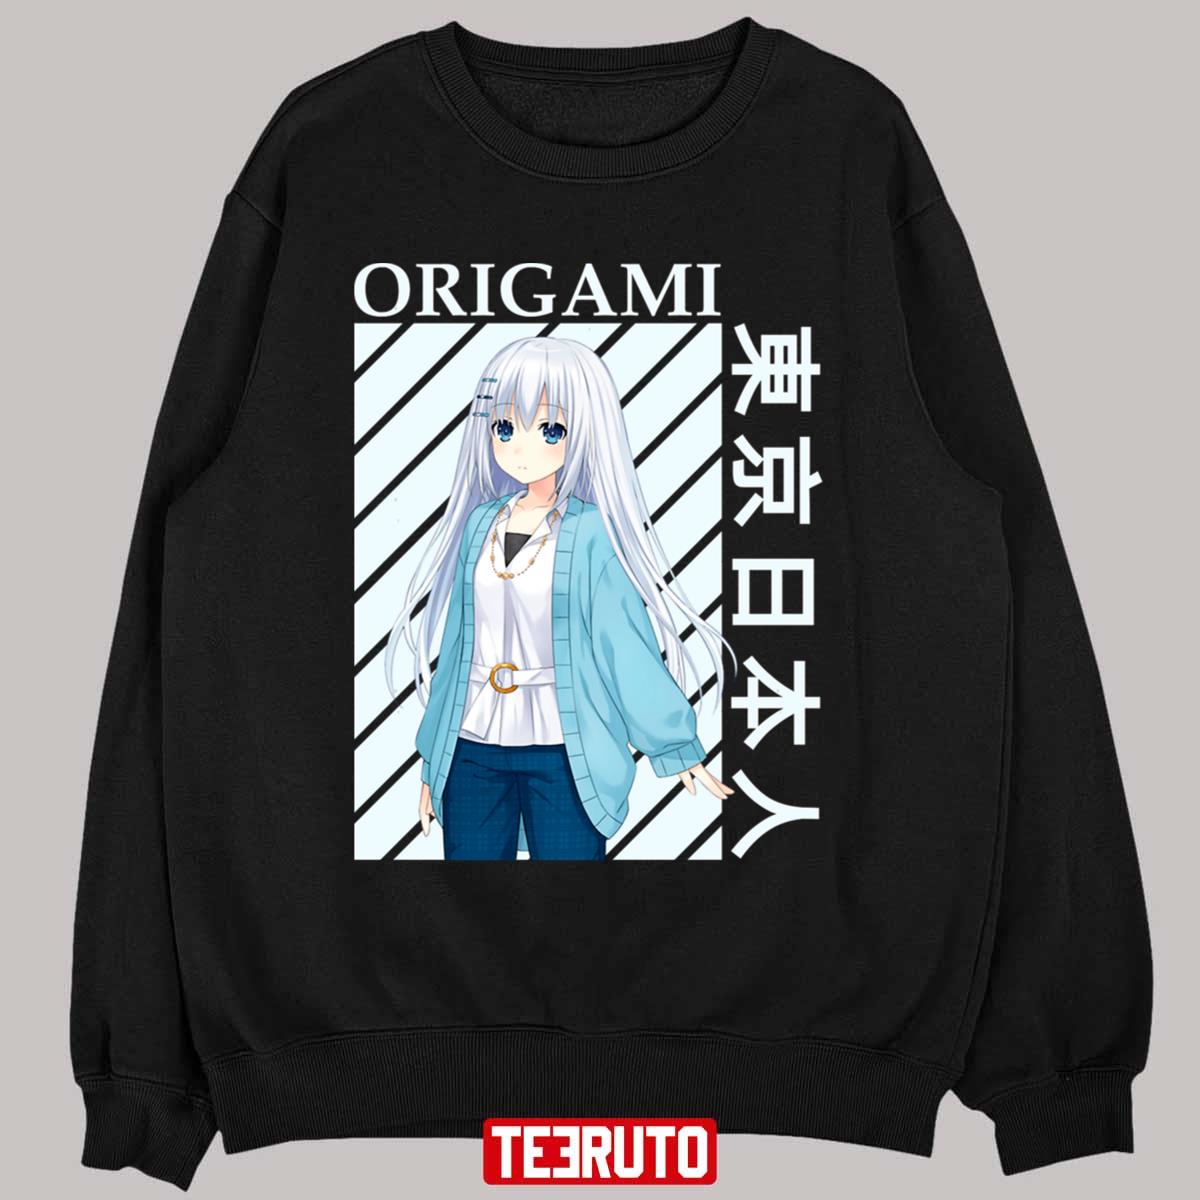 Origami Tobiichi Origami Date A Live Design Unisex T-shirt